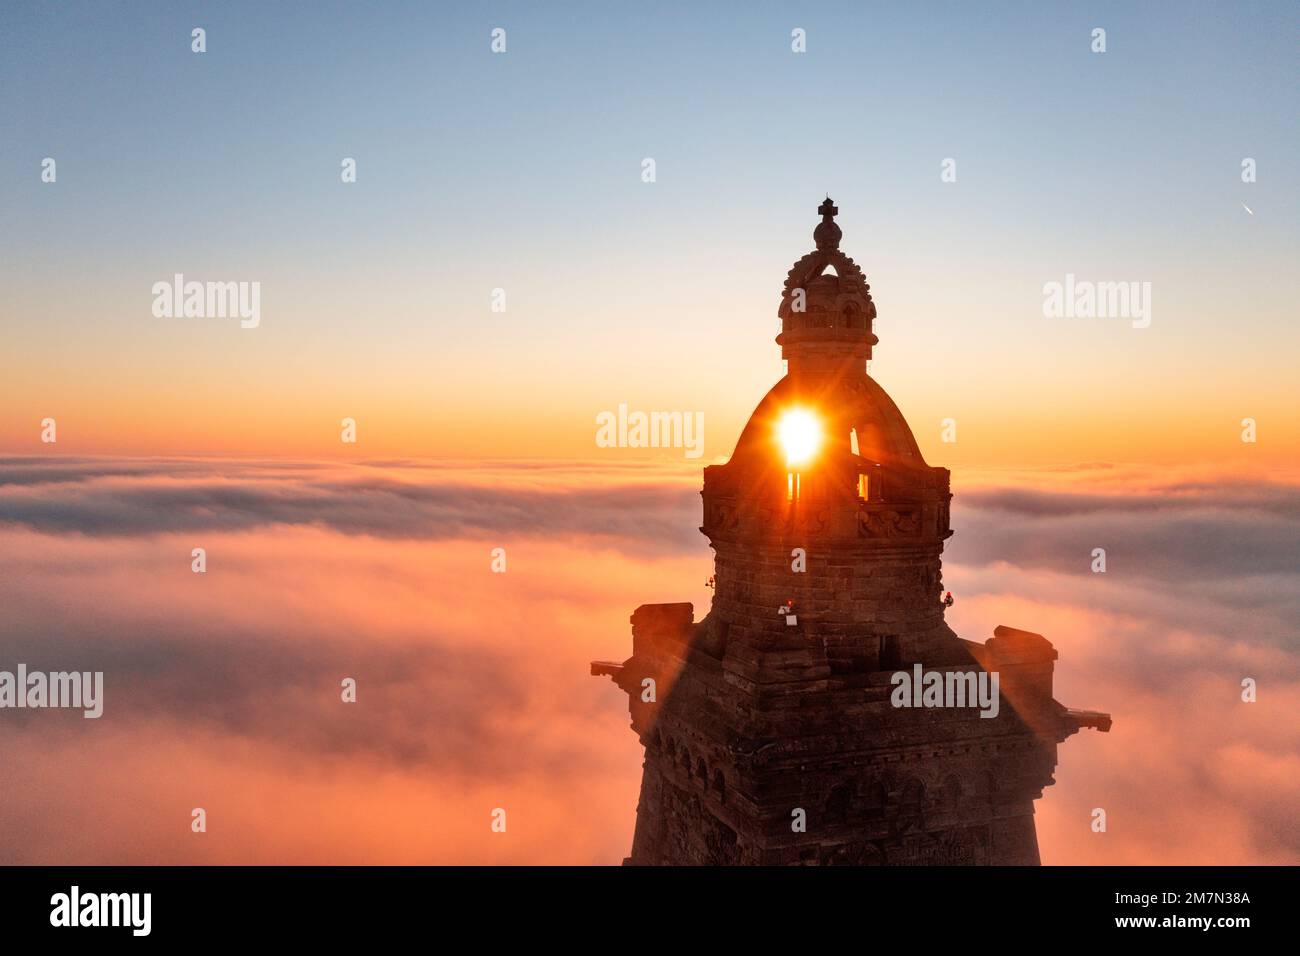 Deutschland, Thüringen, Bad Frankenhausen, Turm des Kyffhäuser Monuments erhebt sich aus niedrigen Wolken, Sonne geht auf und scheint durch Turmkuppel, Hintergrundlicht Stockfoto